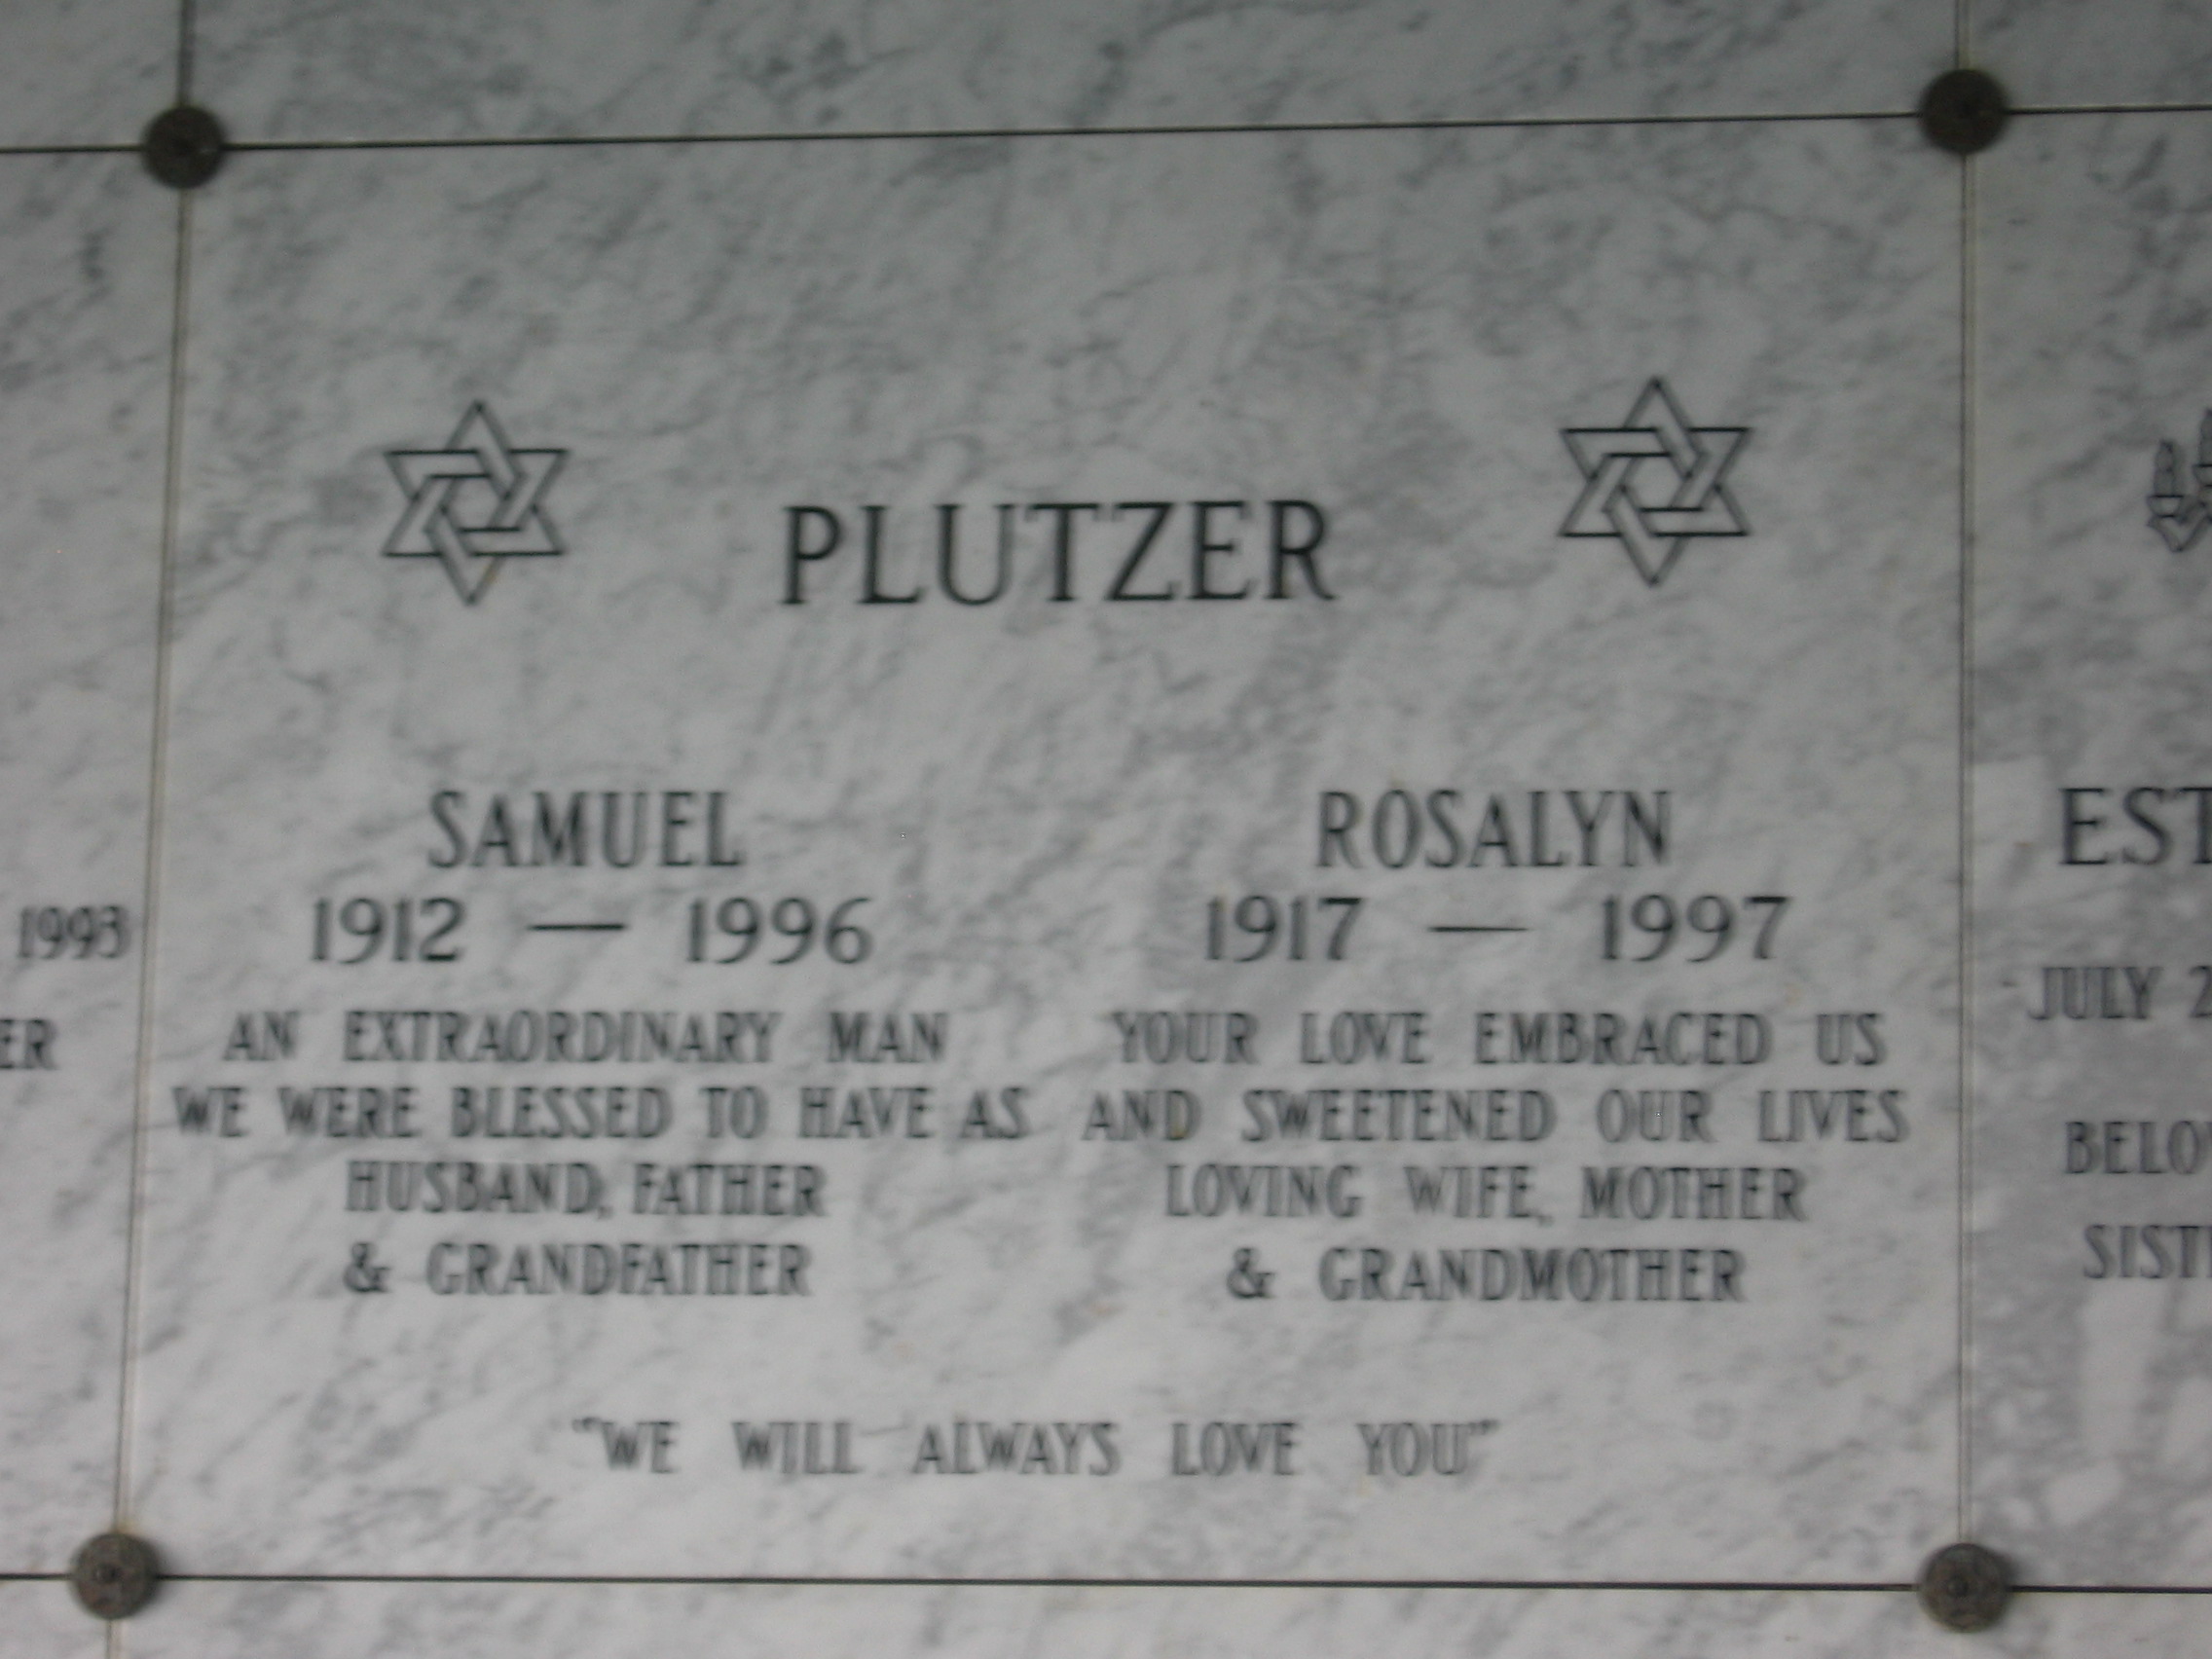 Samuel Plutzer